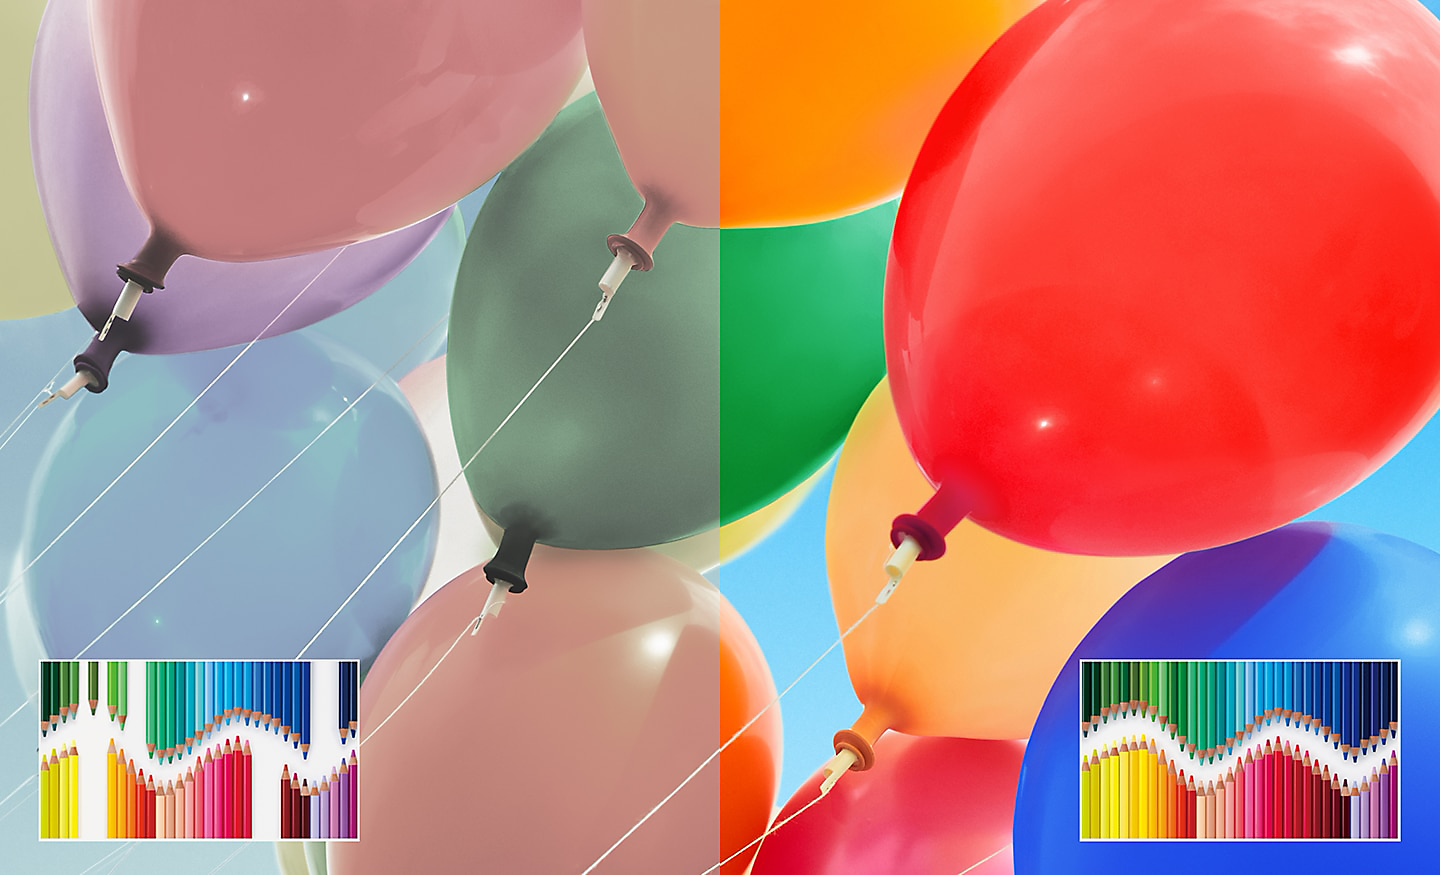 Image comparative représentant des montgolfières multicolores avec la luminosité et le contraste optimisés à droite